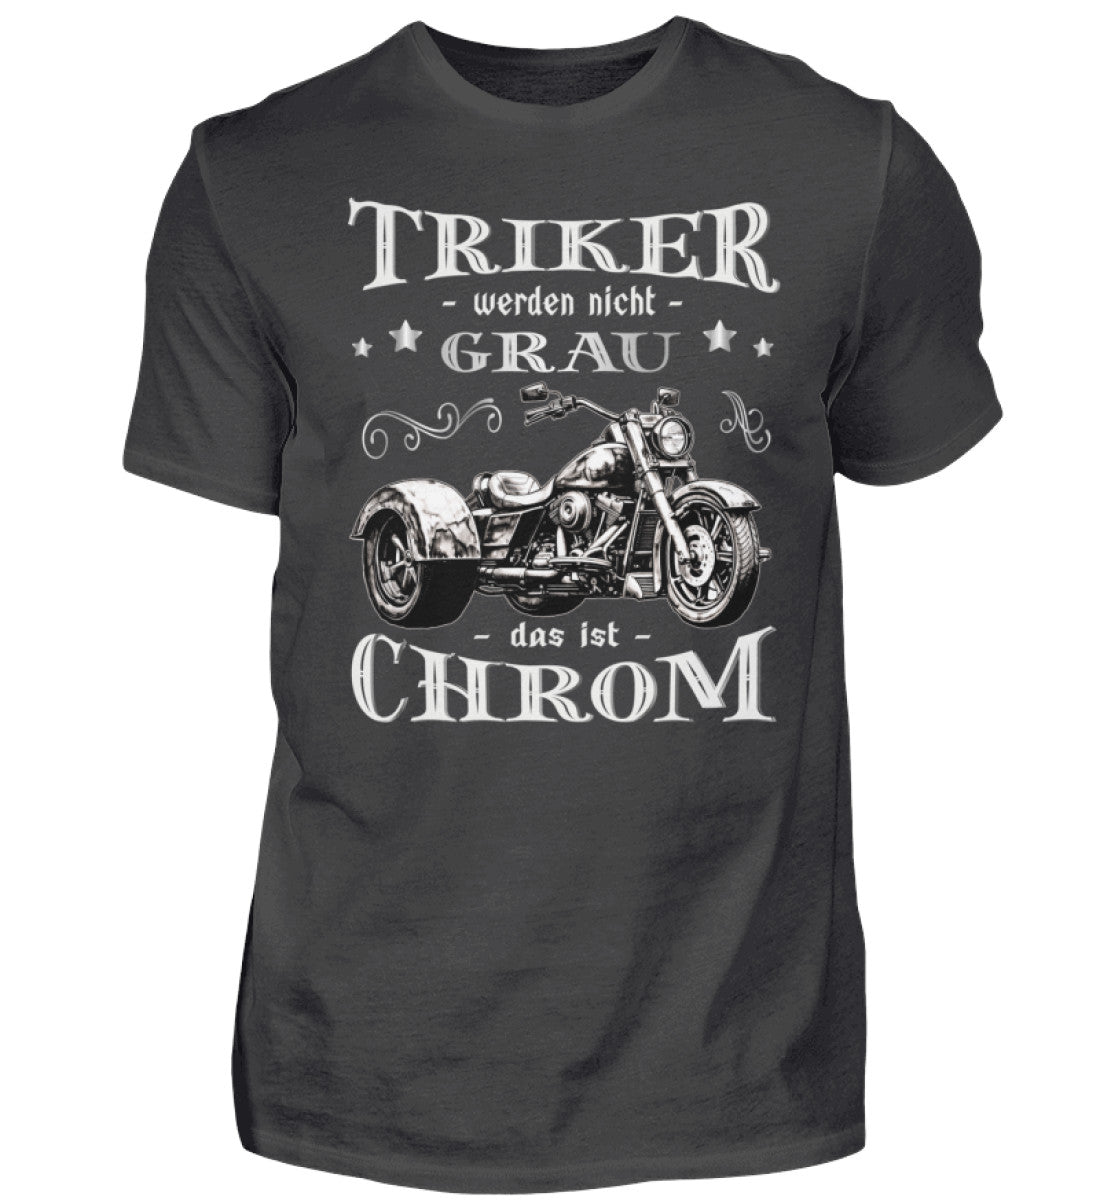 Ein Triker T-Shirt für Trikefahrer von Wingbikers mit dem Aufdruck, Triker werden nicht grau - Das ist Chrom, in dunkelgrau.